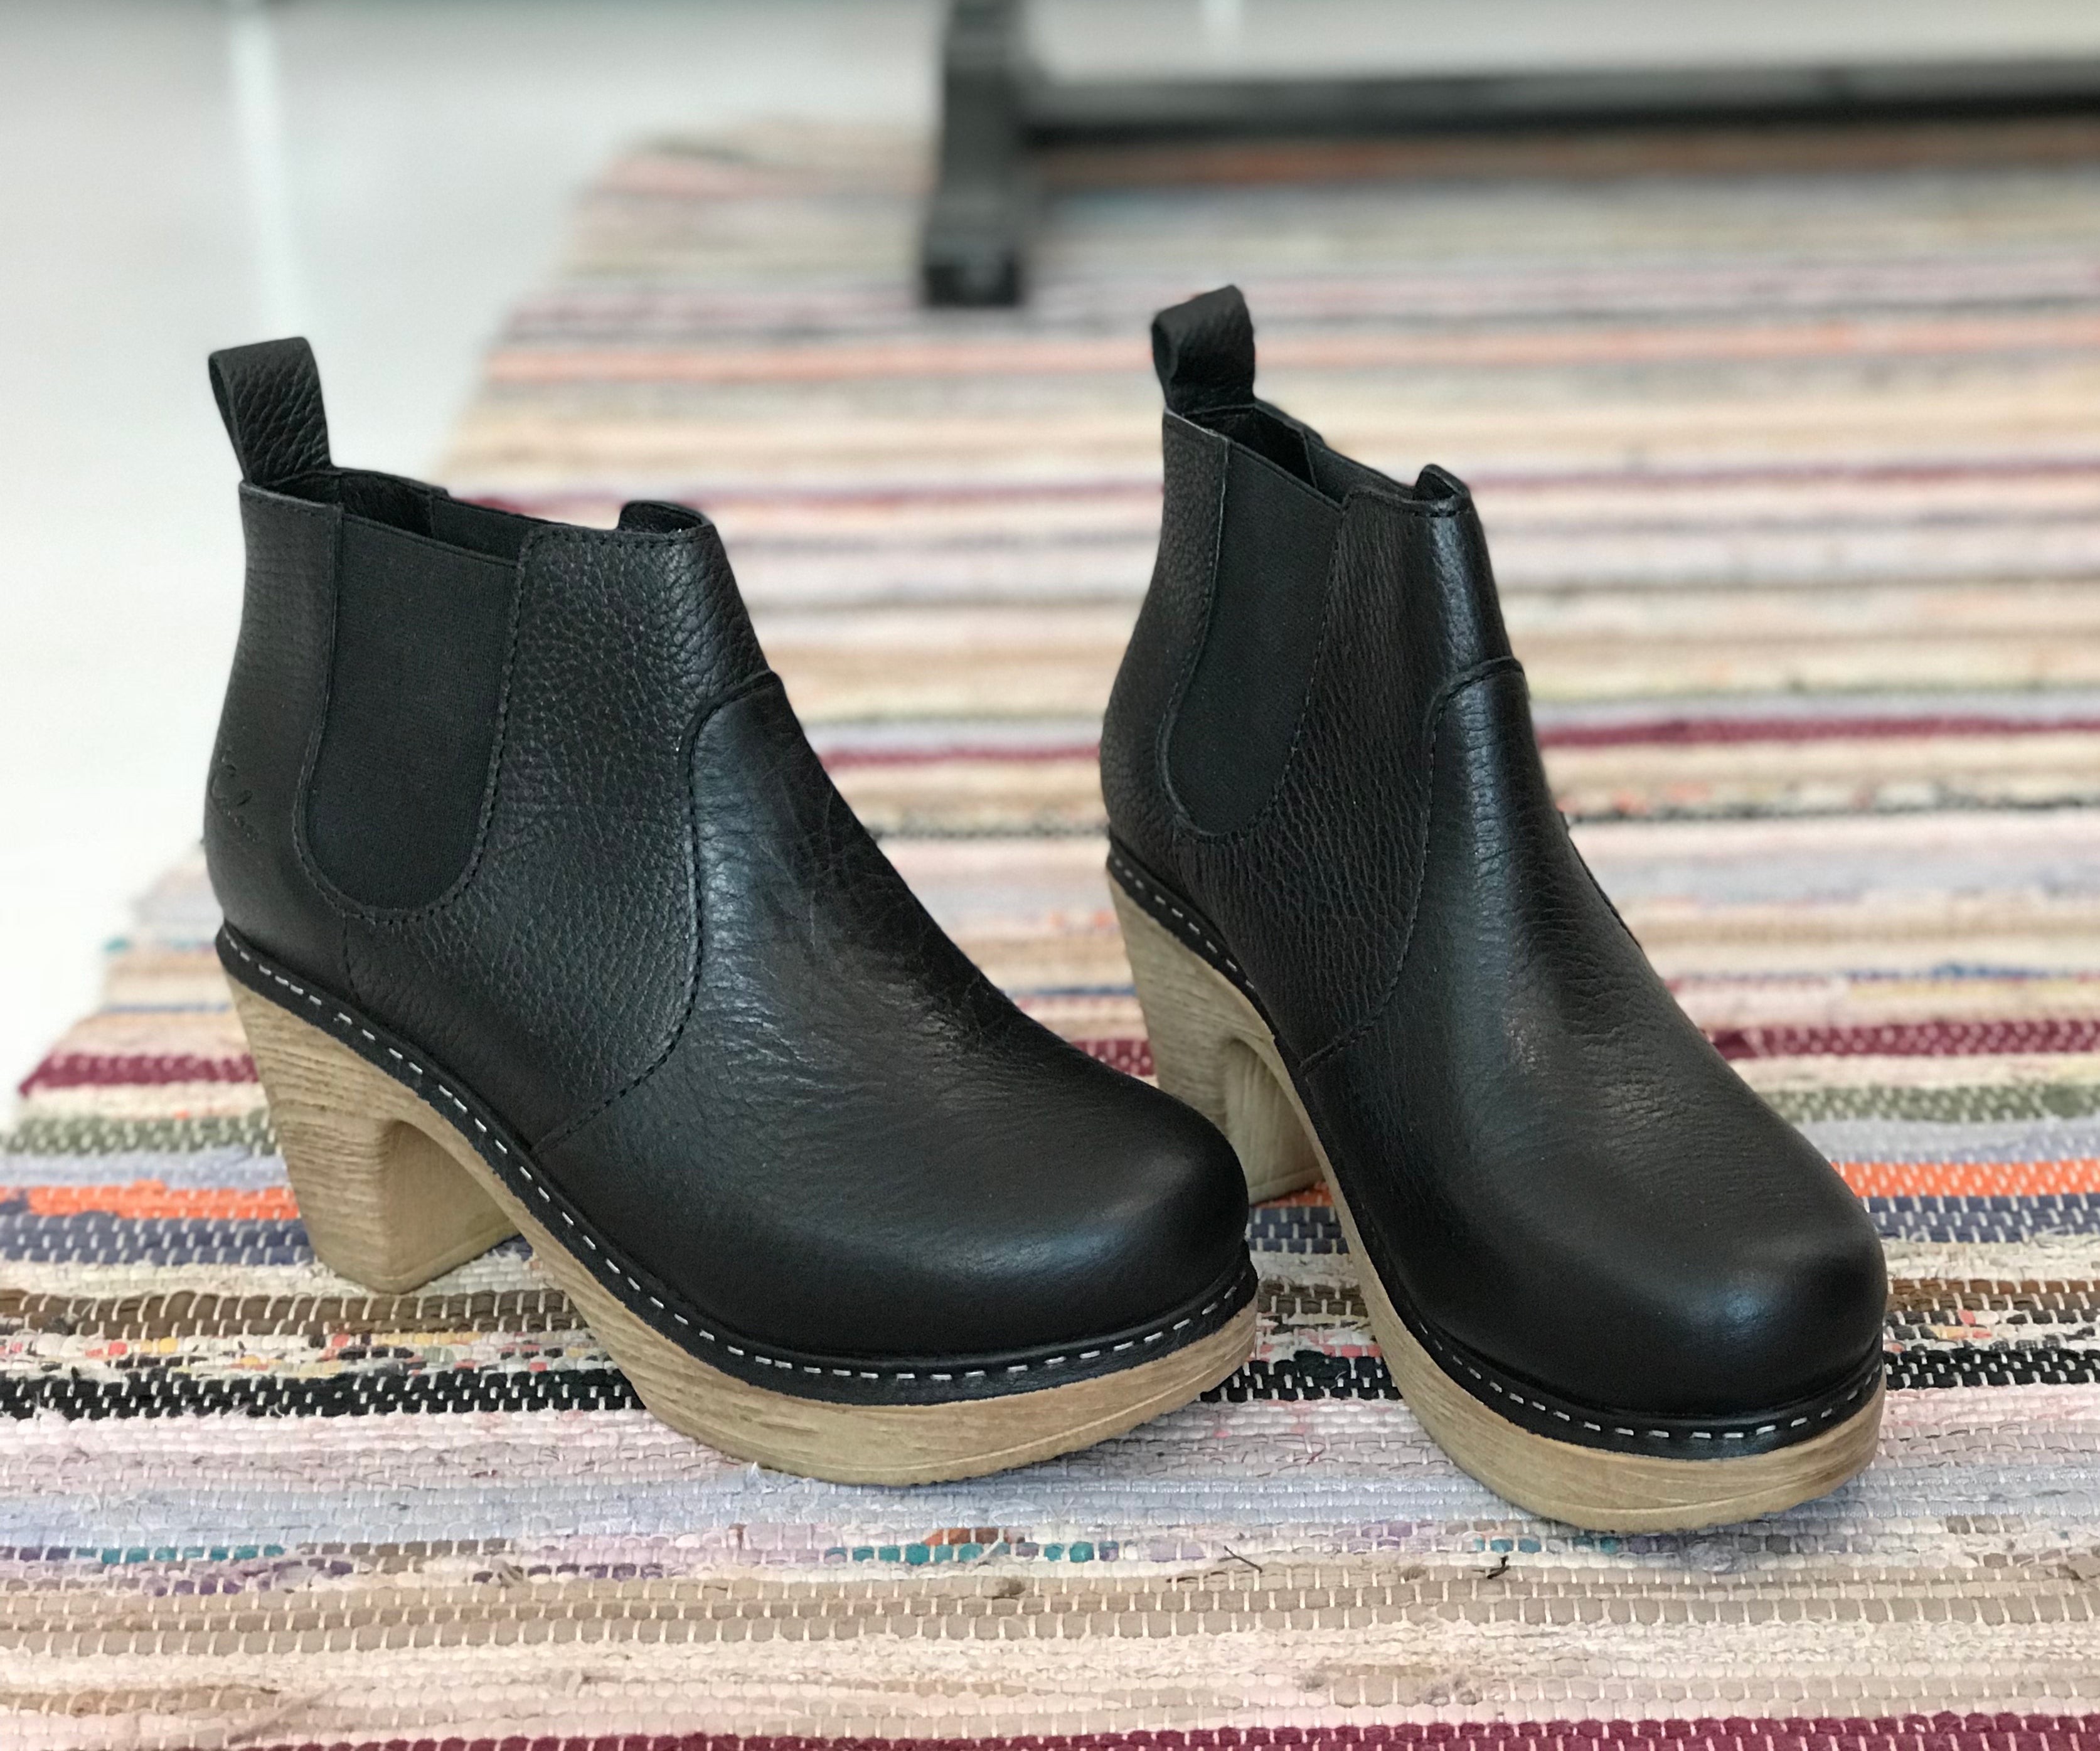 Calou Clogs | Doris Black leather clog boot – Calou Stockholm